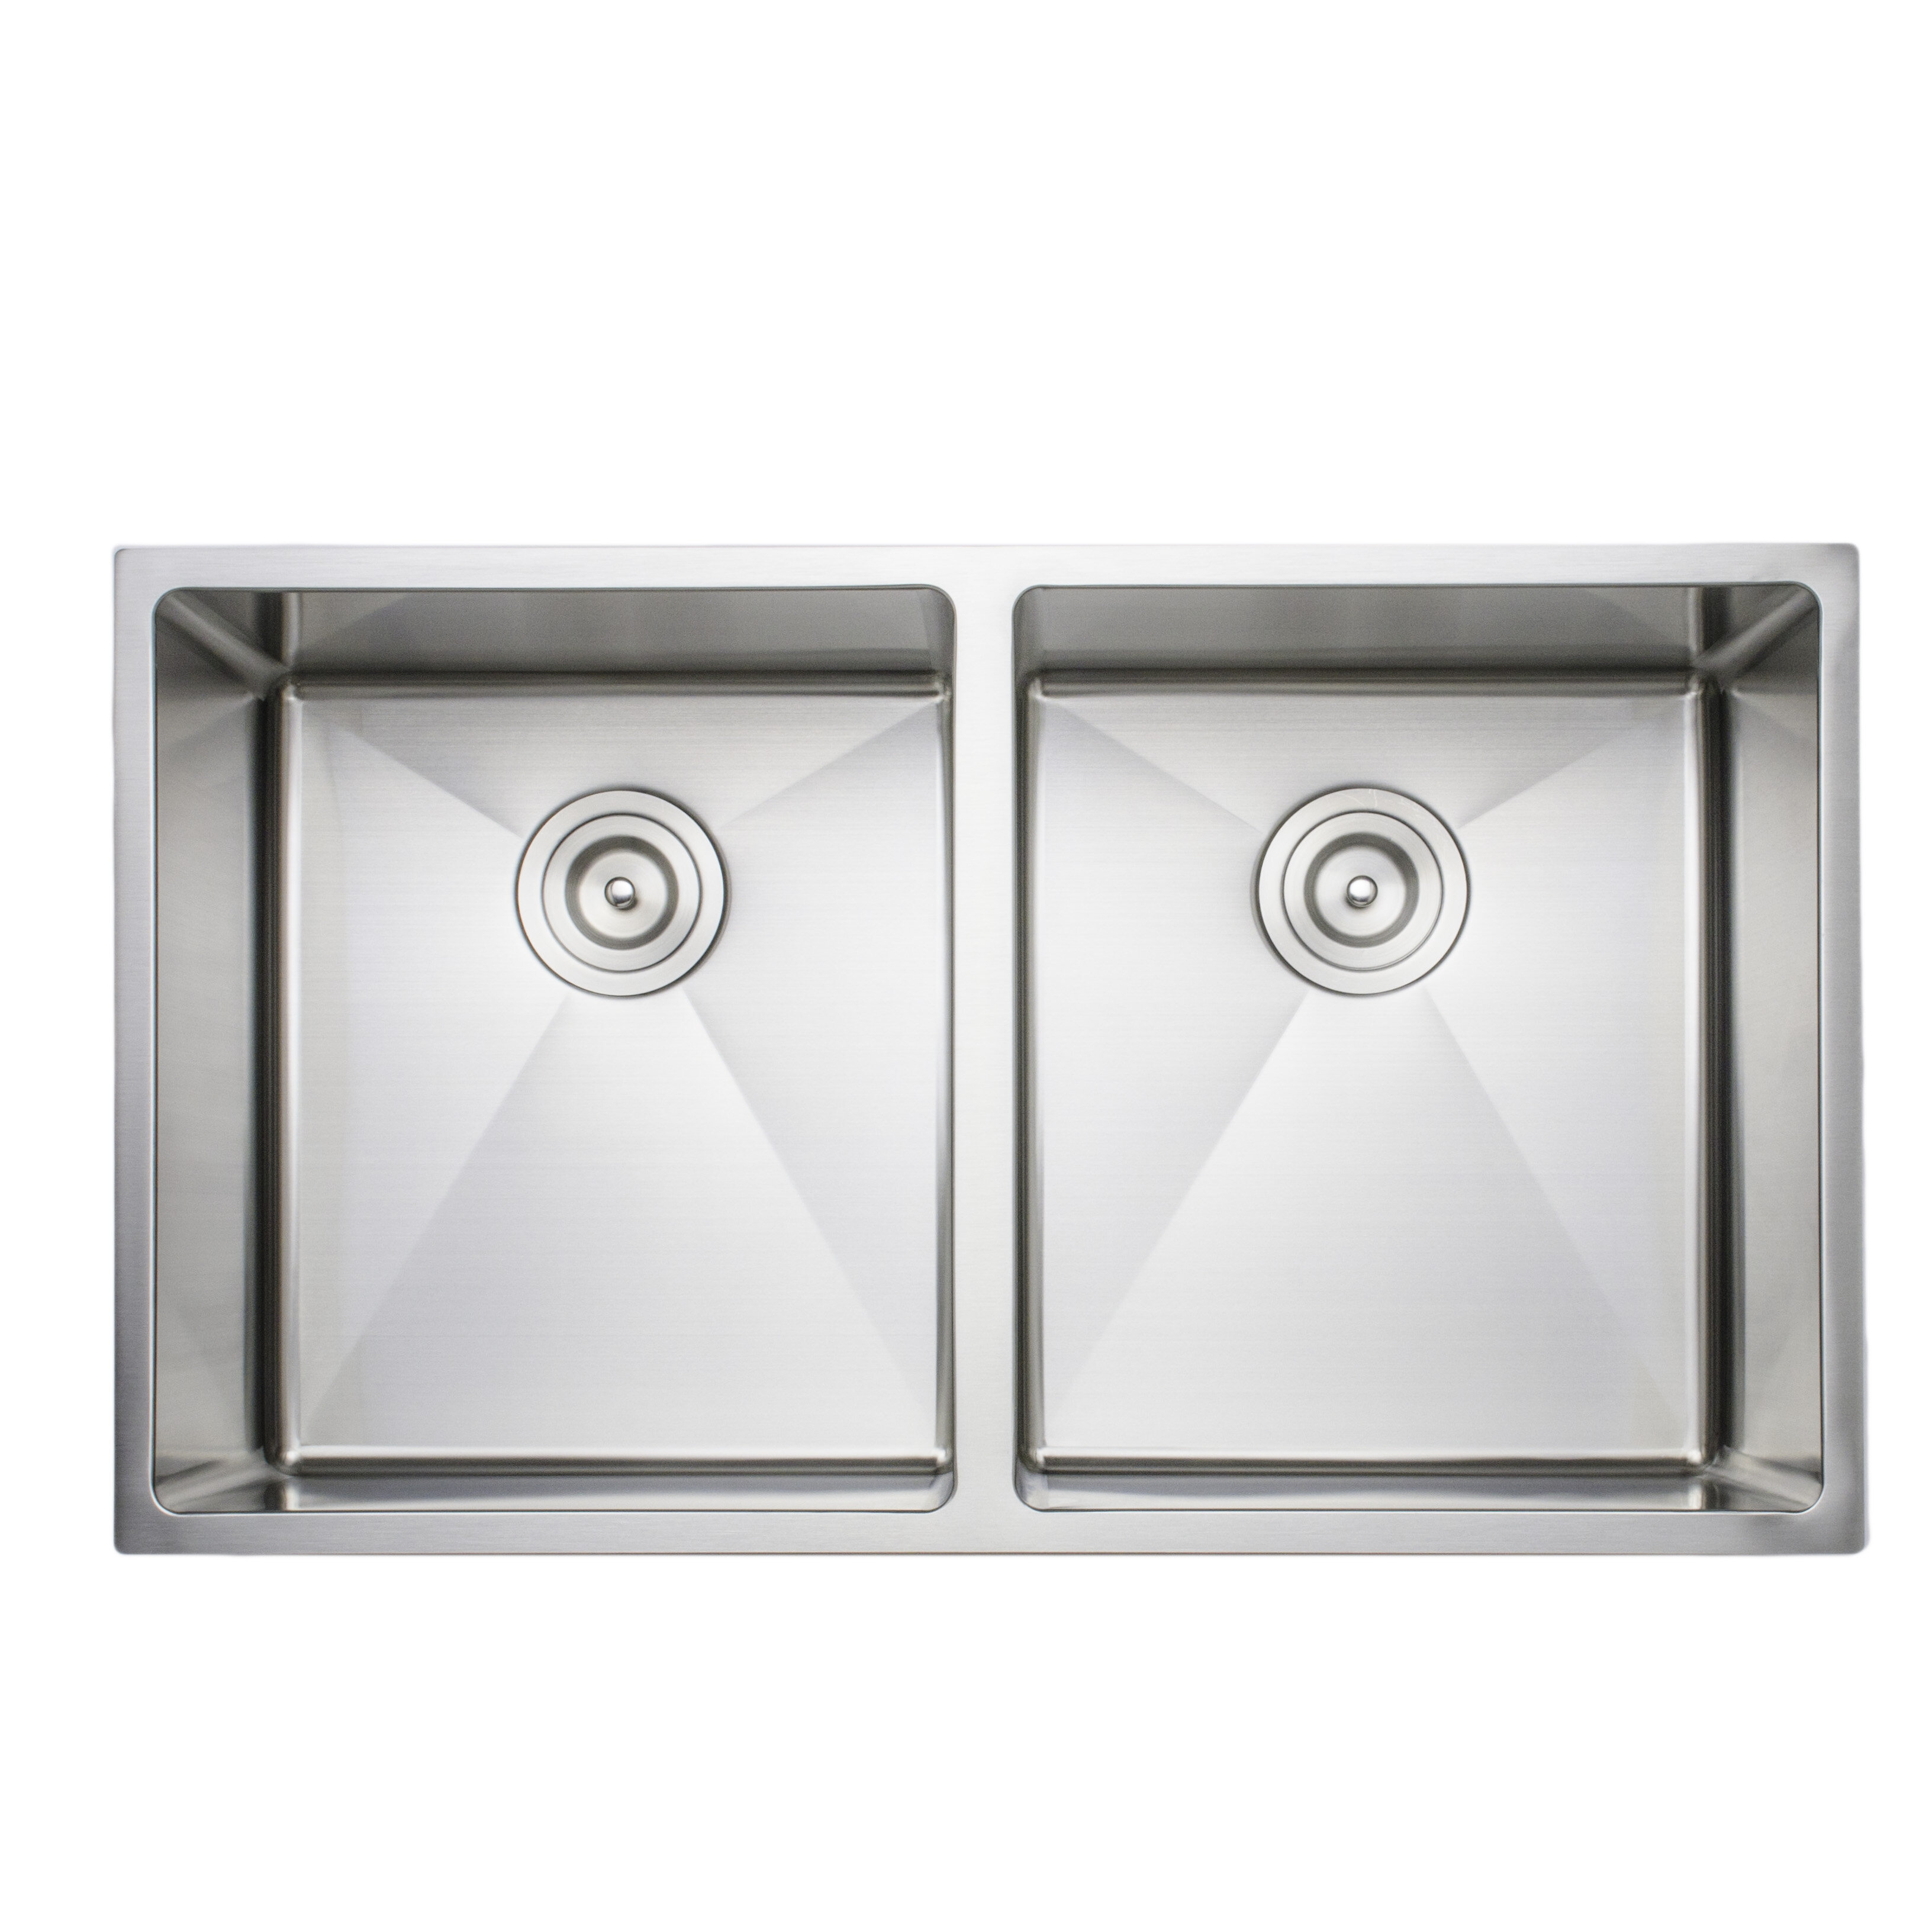 Primart 33X19 Inch 16 Gauge Undermount double bowls Stainless Steel Kitchen Sink 